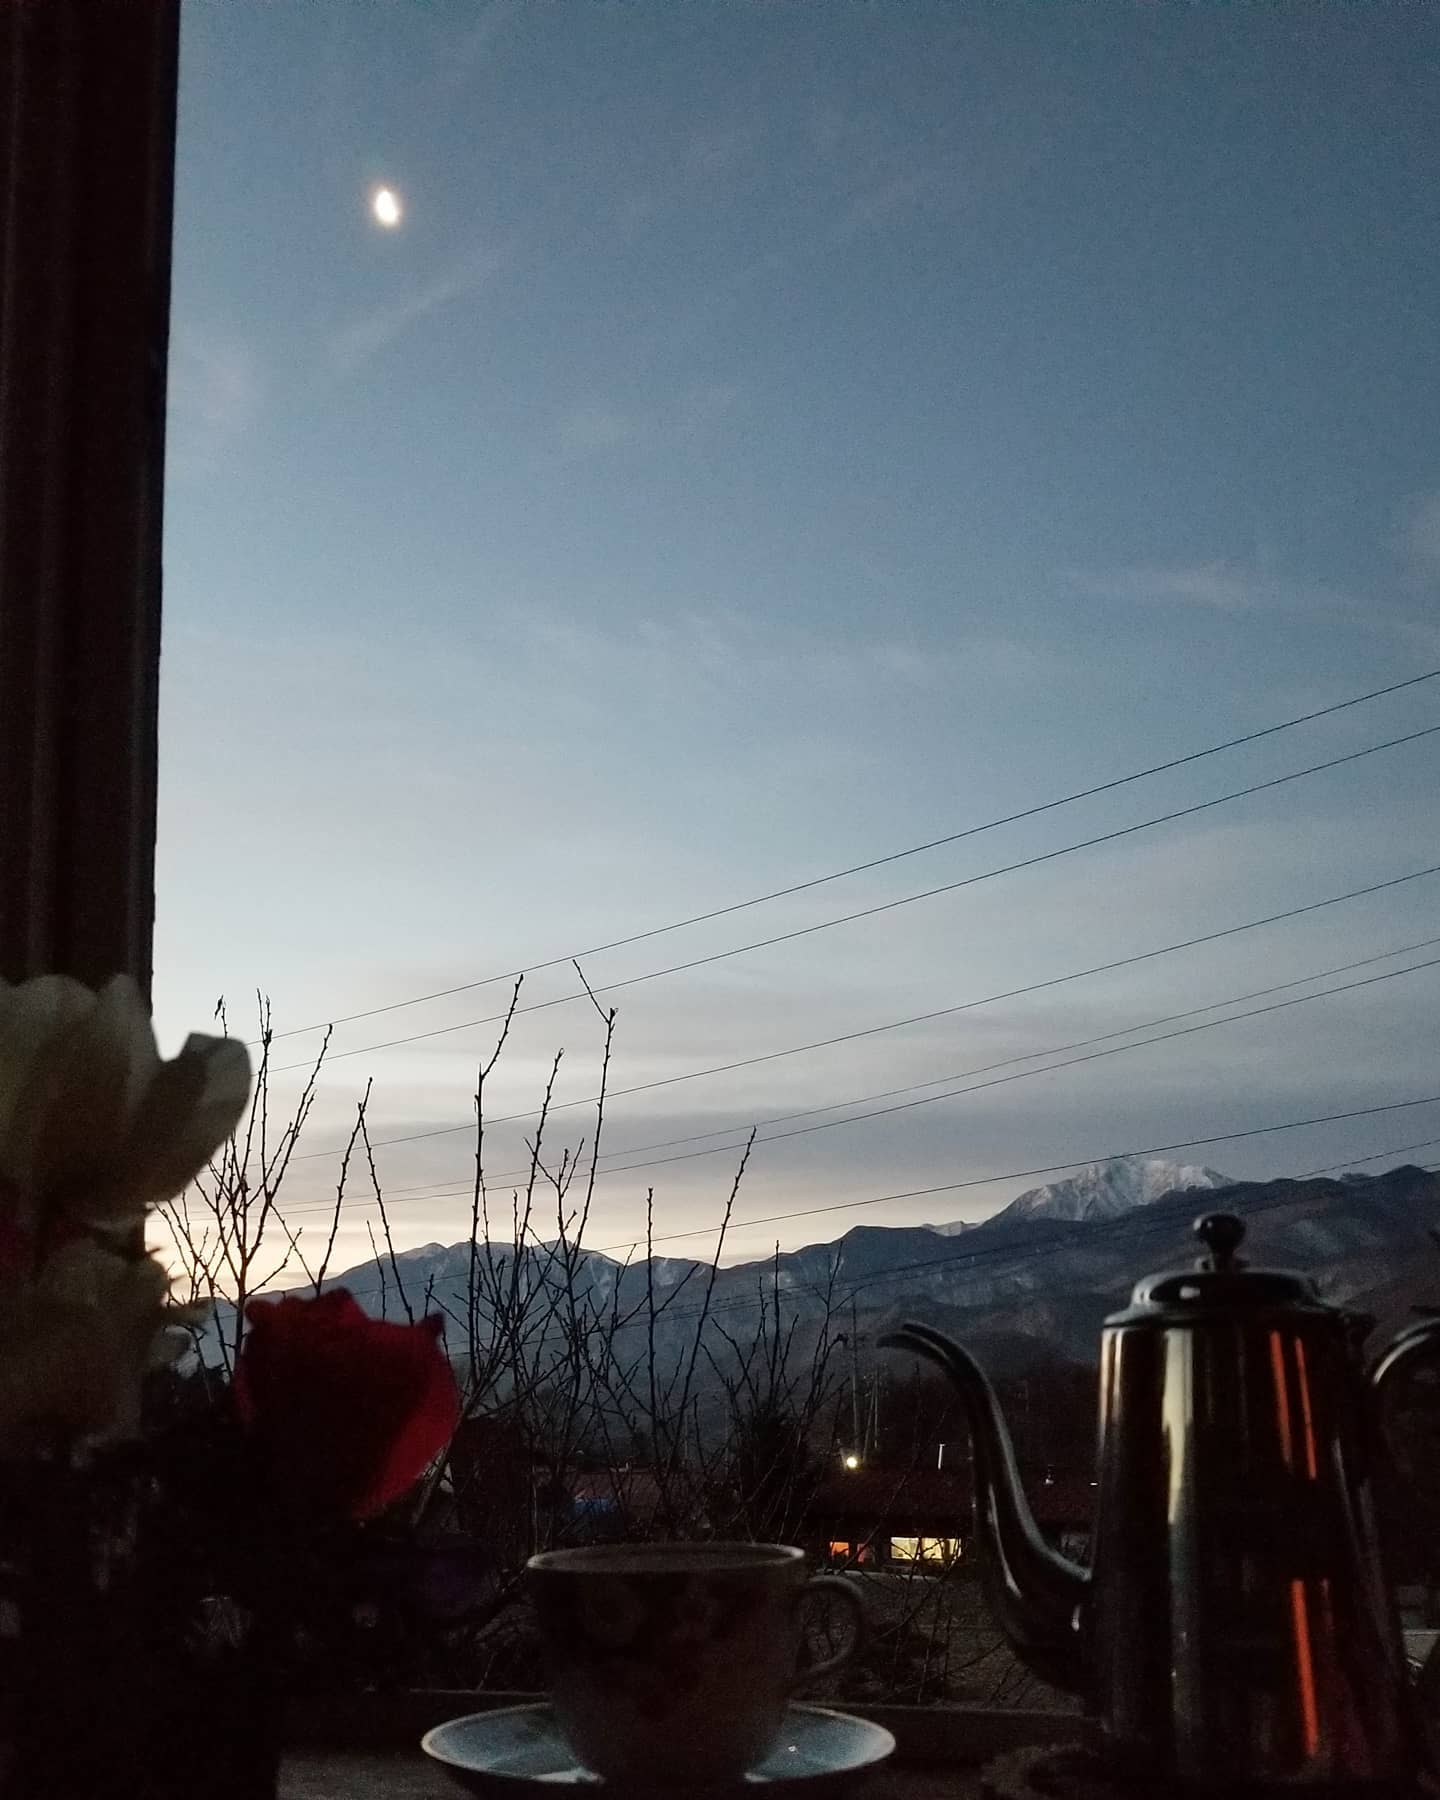 2022年 朝のお茶と月とアネモネと白い甲斐駒ヶ岳 #八ヶ岳の空機嫌 #ひなぎくきつね #countrysideskyjapan